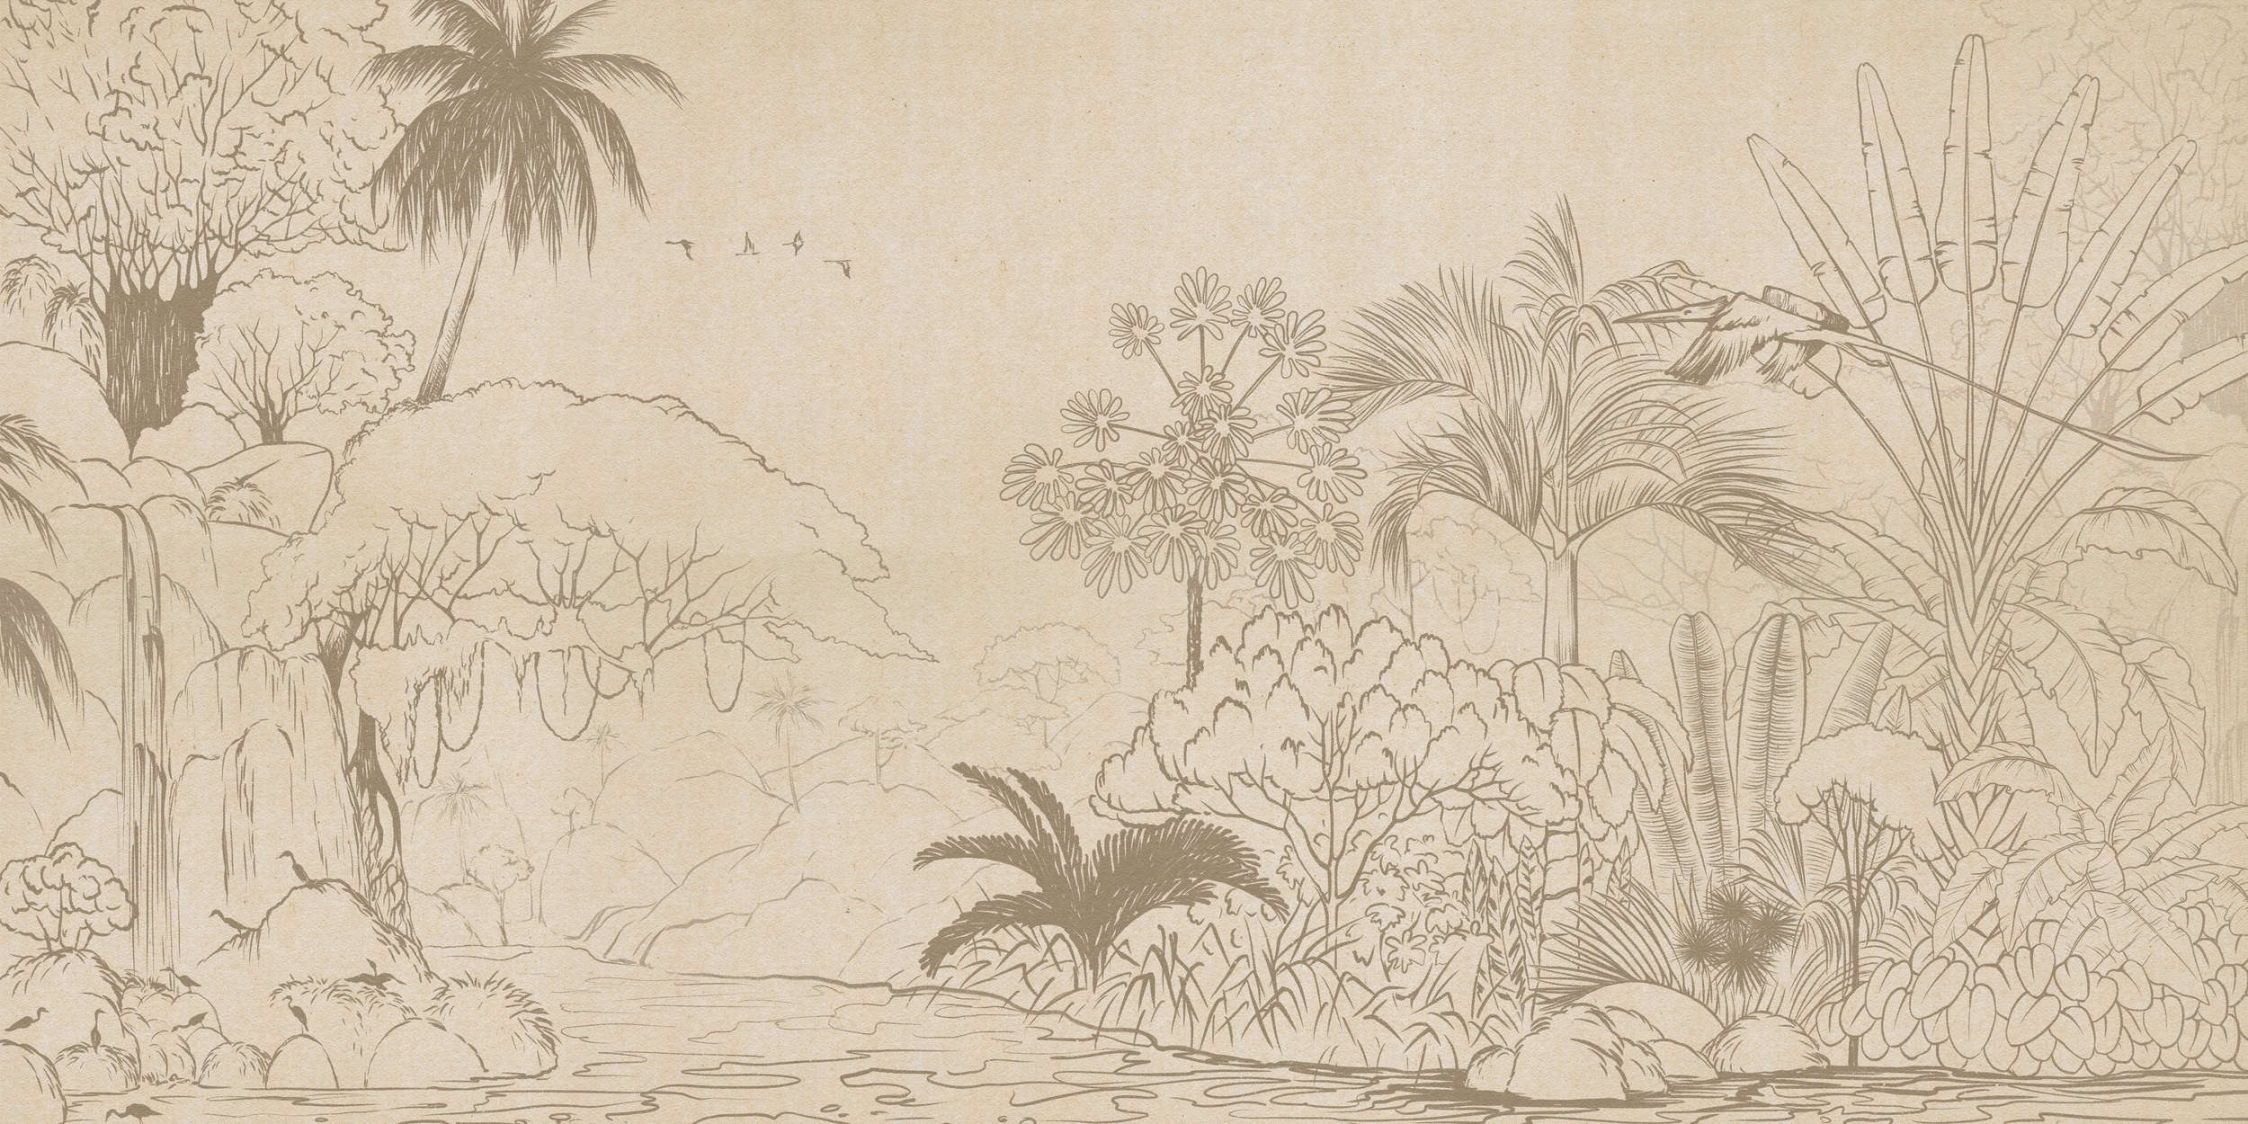             Papel pintado »oasis« - Selva en estilo dibujo con aspecto de papel hecho a mano - Material sin tejer liso, ligeramente nacarado.
        